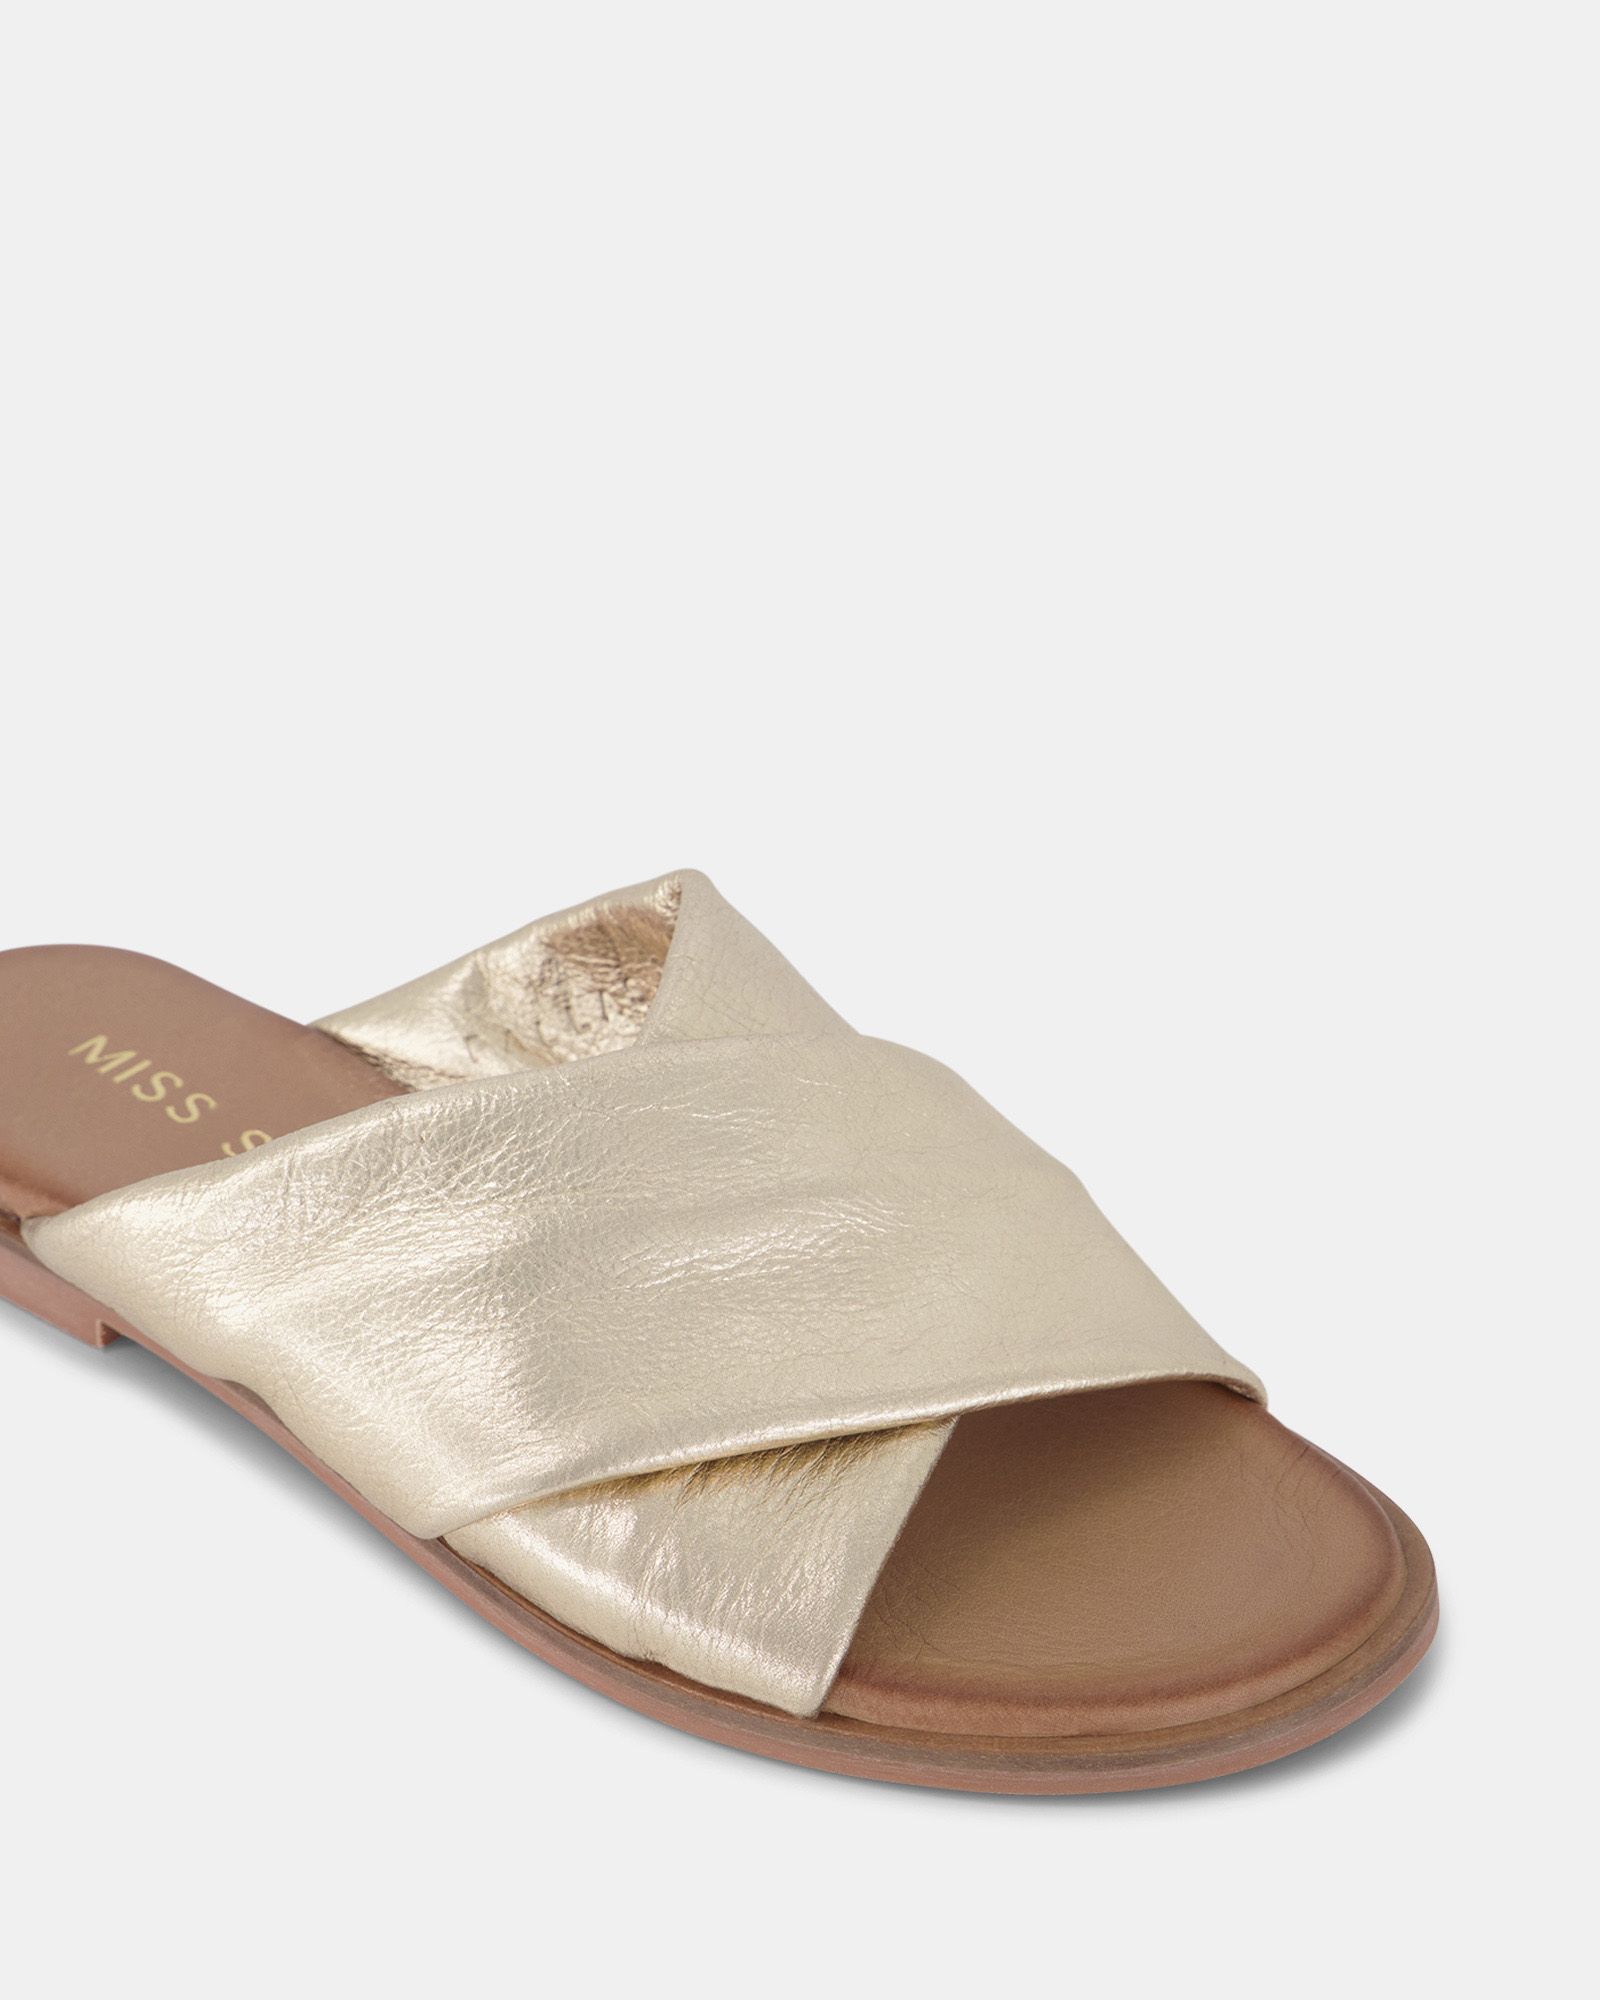 Miss Sofie Pallas Sandals - Gold | Shoe Connection AU